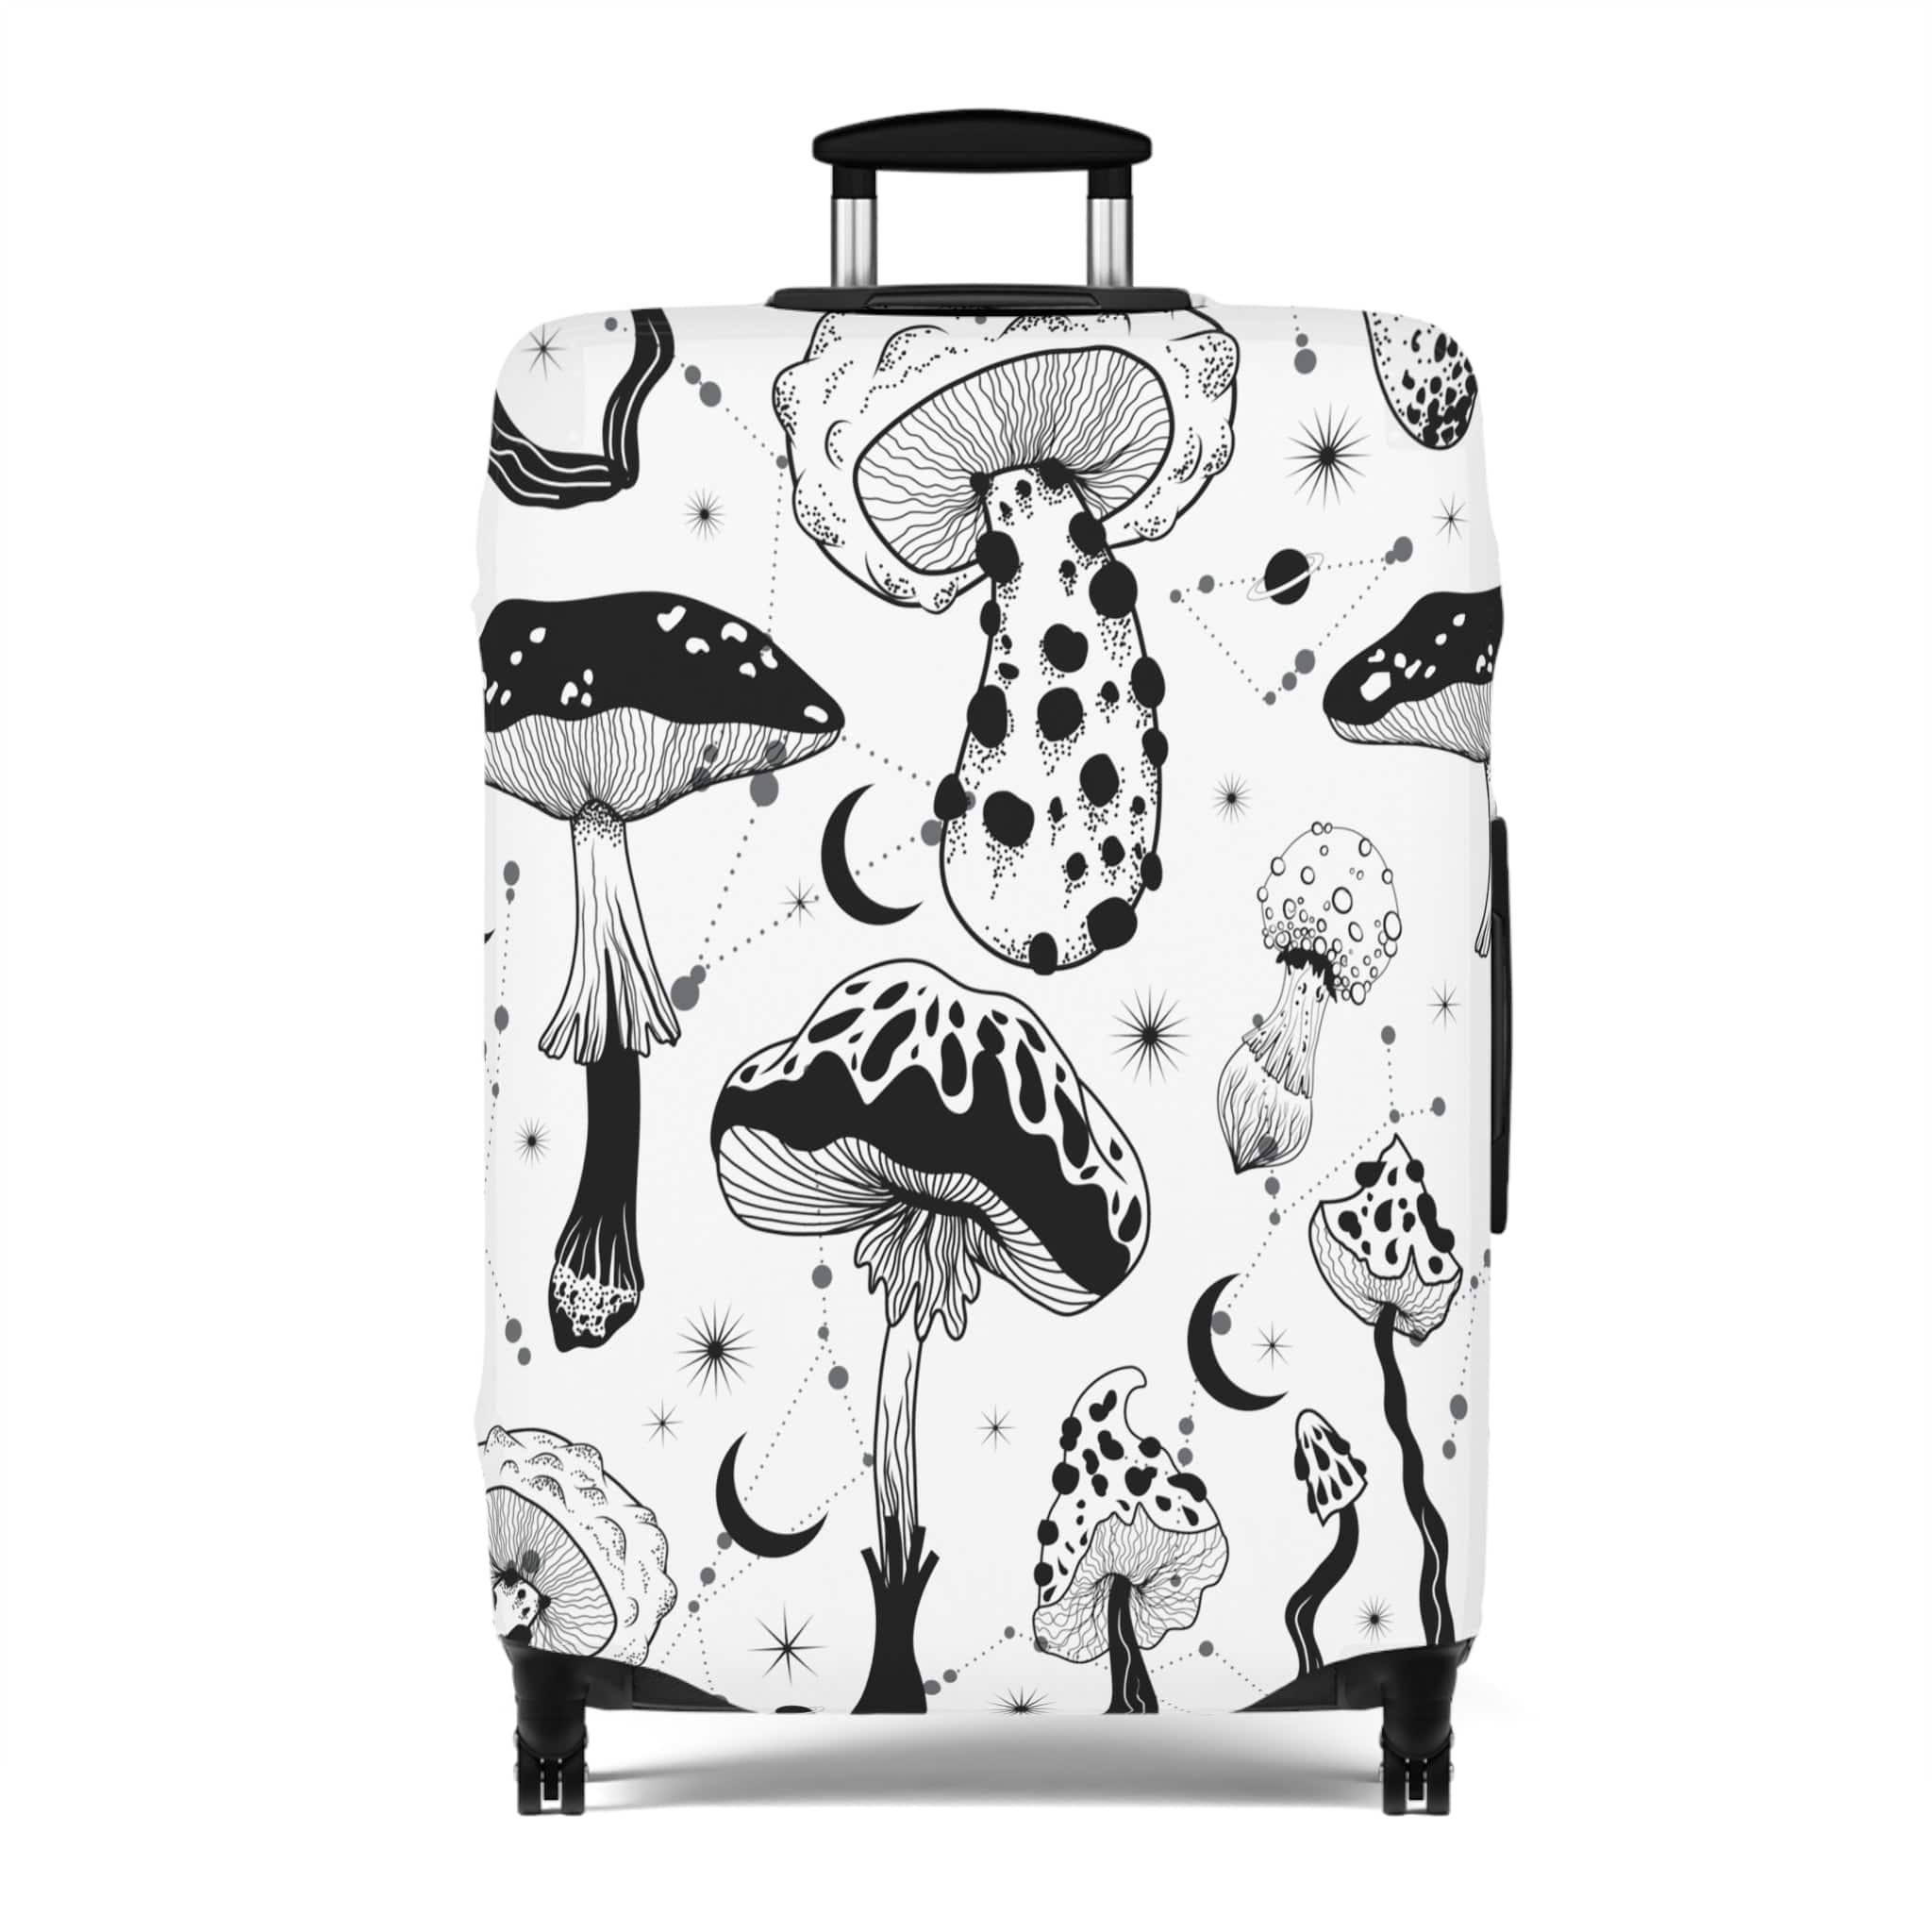 Kate McEnroe New York Mystical Mushroom Cottagecore Luggage CoverLuggage Covers10311215857710216174